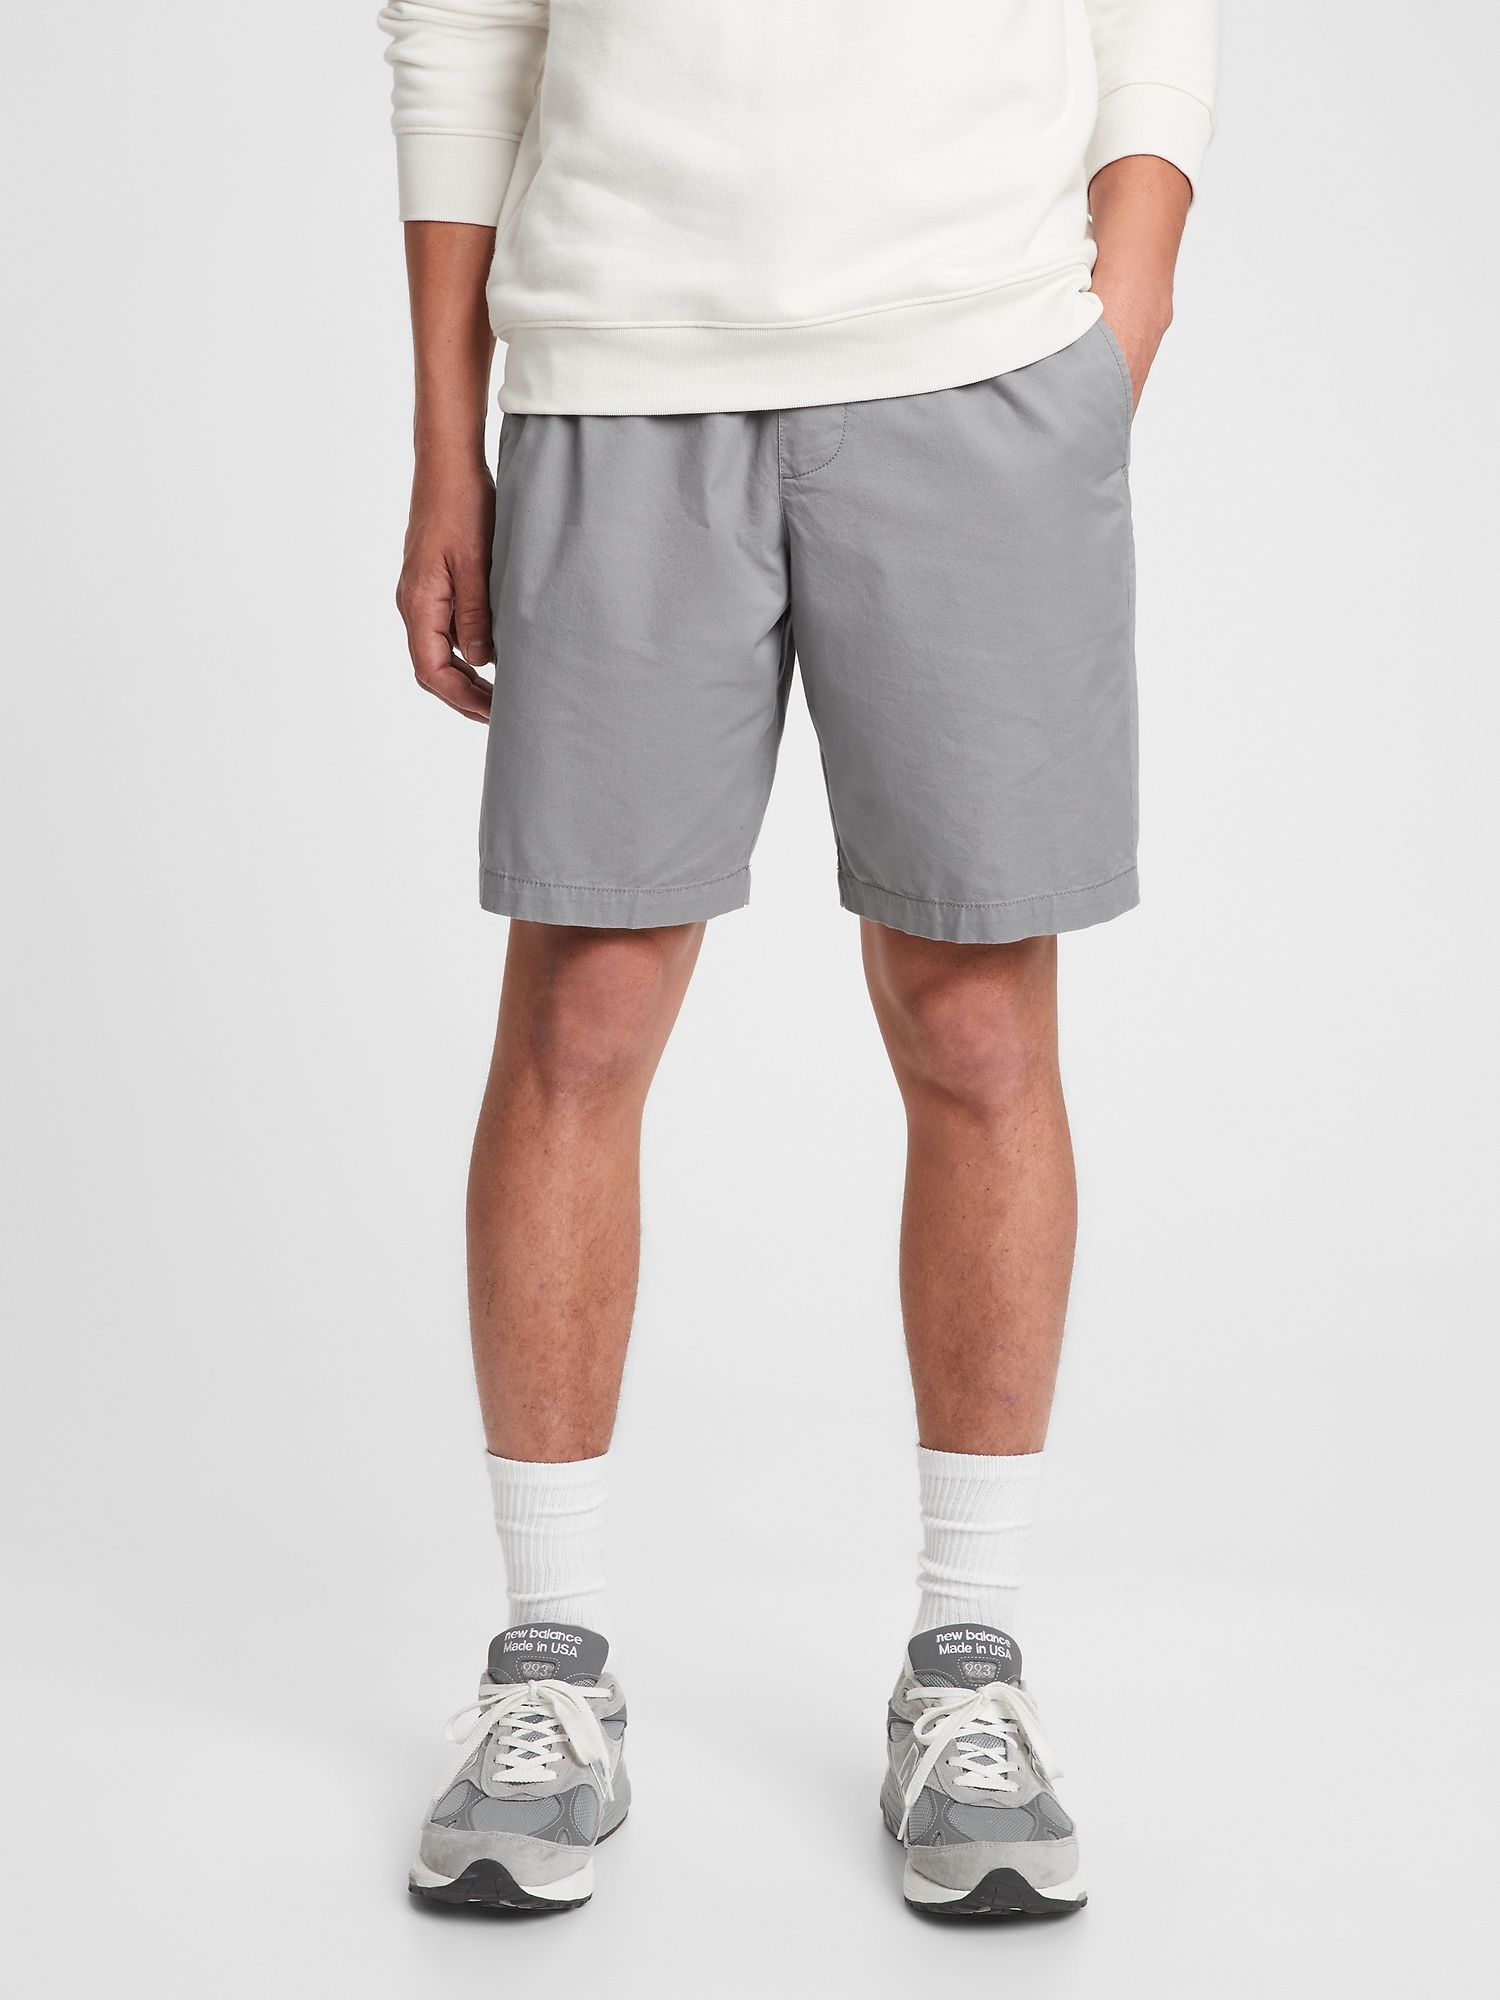 新規購入 UNSLACKS active easy pants shorts - ショートパンツ - www.ucs.gob.ve